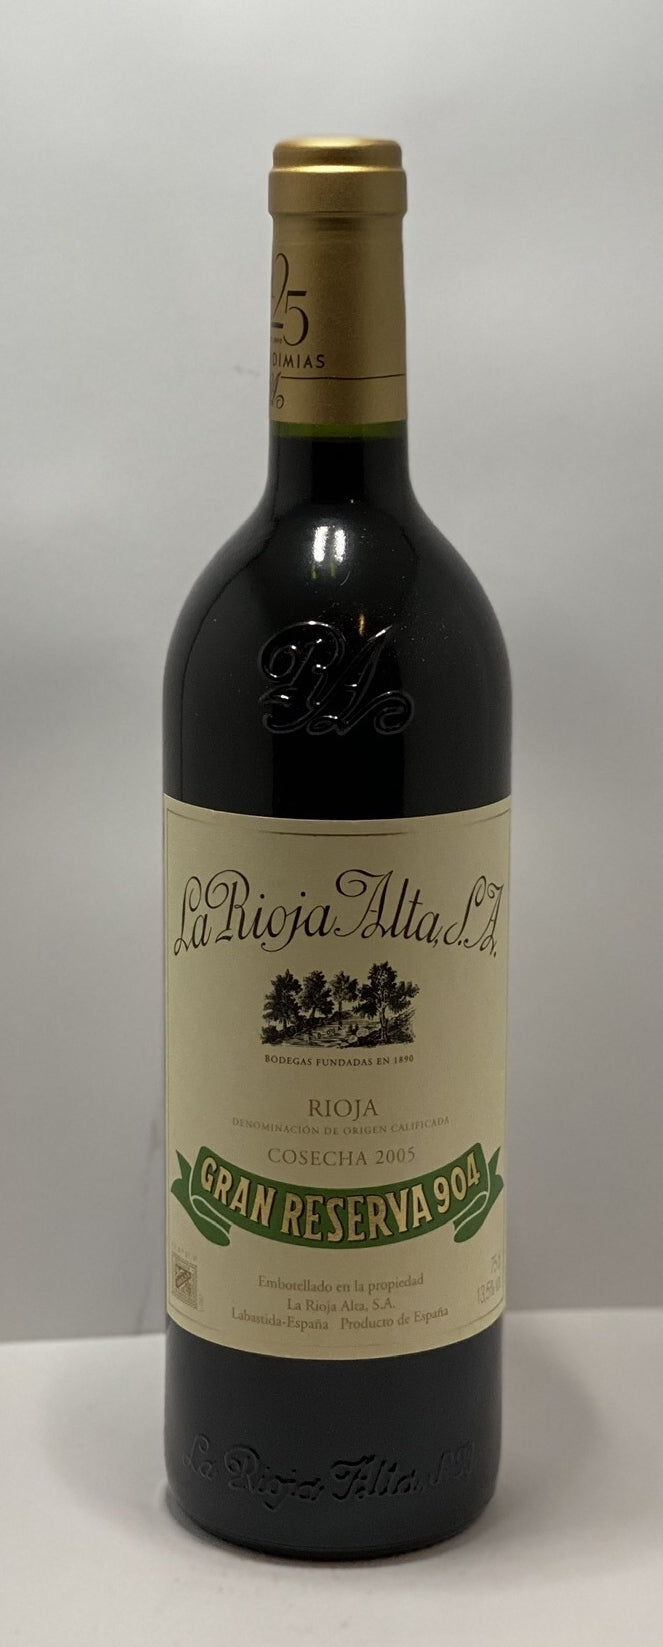 2005 La Rioja Alta Gran Reserva 904